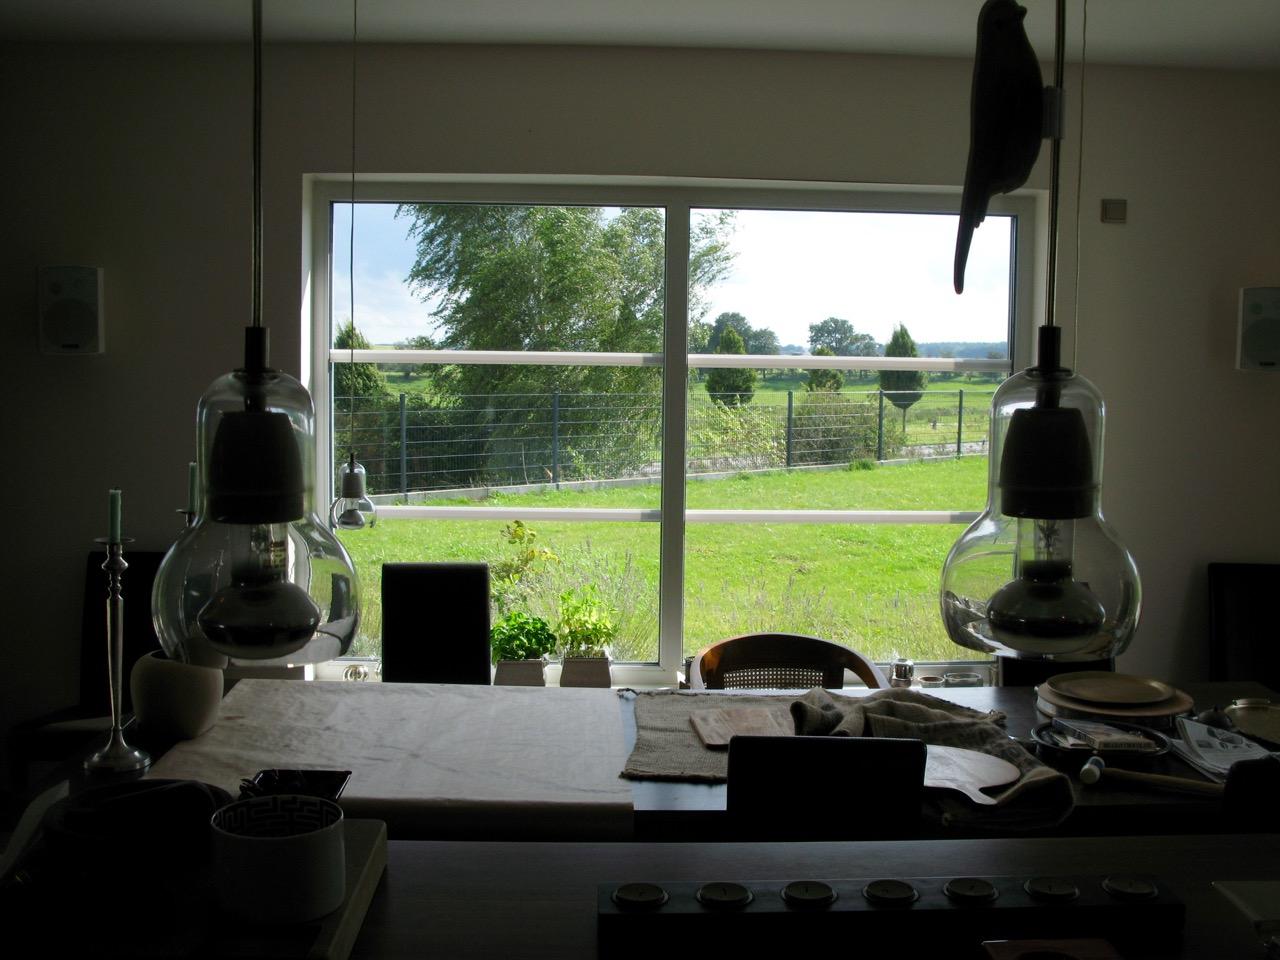 Was ich zudem an unserer #küche mag, ist das große Panoramafenster, leider heute mit Ausblick auf #stormyweather ...